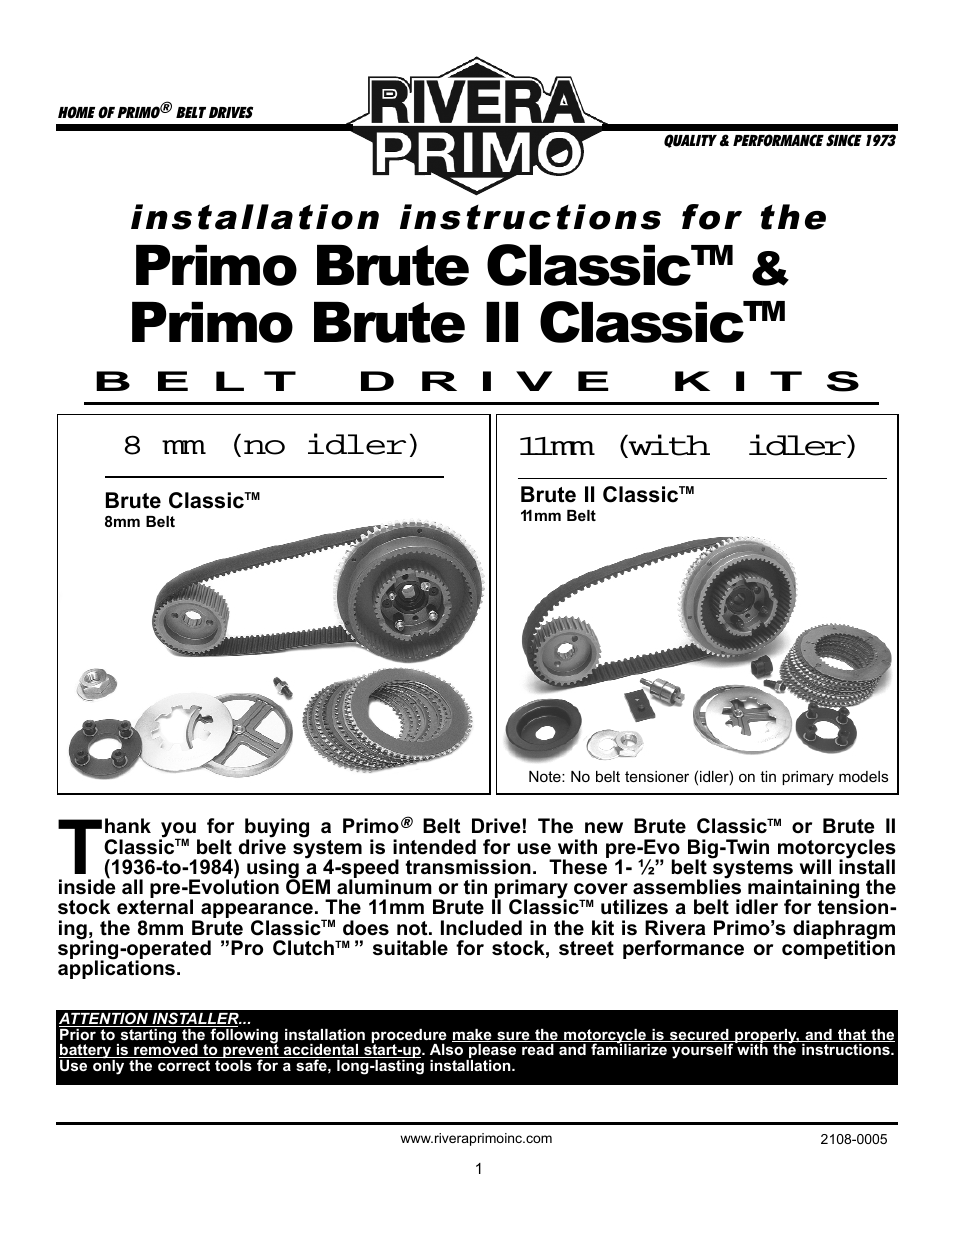 Brute II Classic & Classic